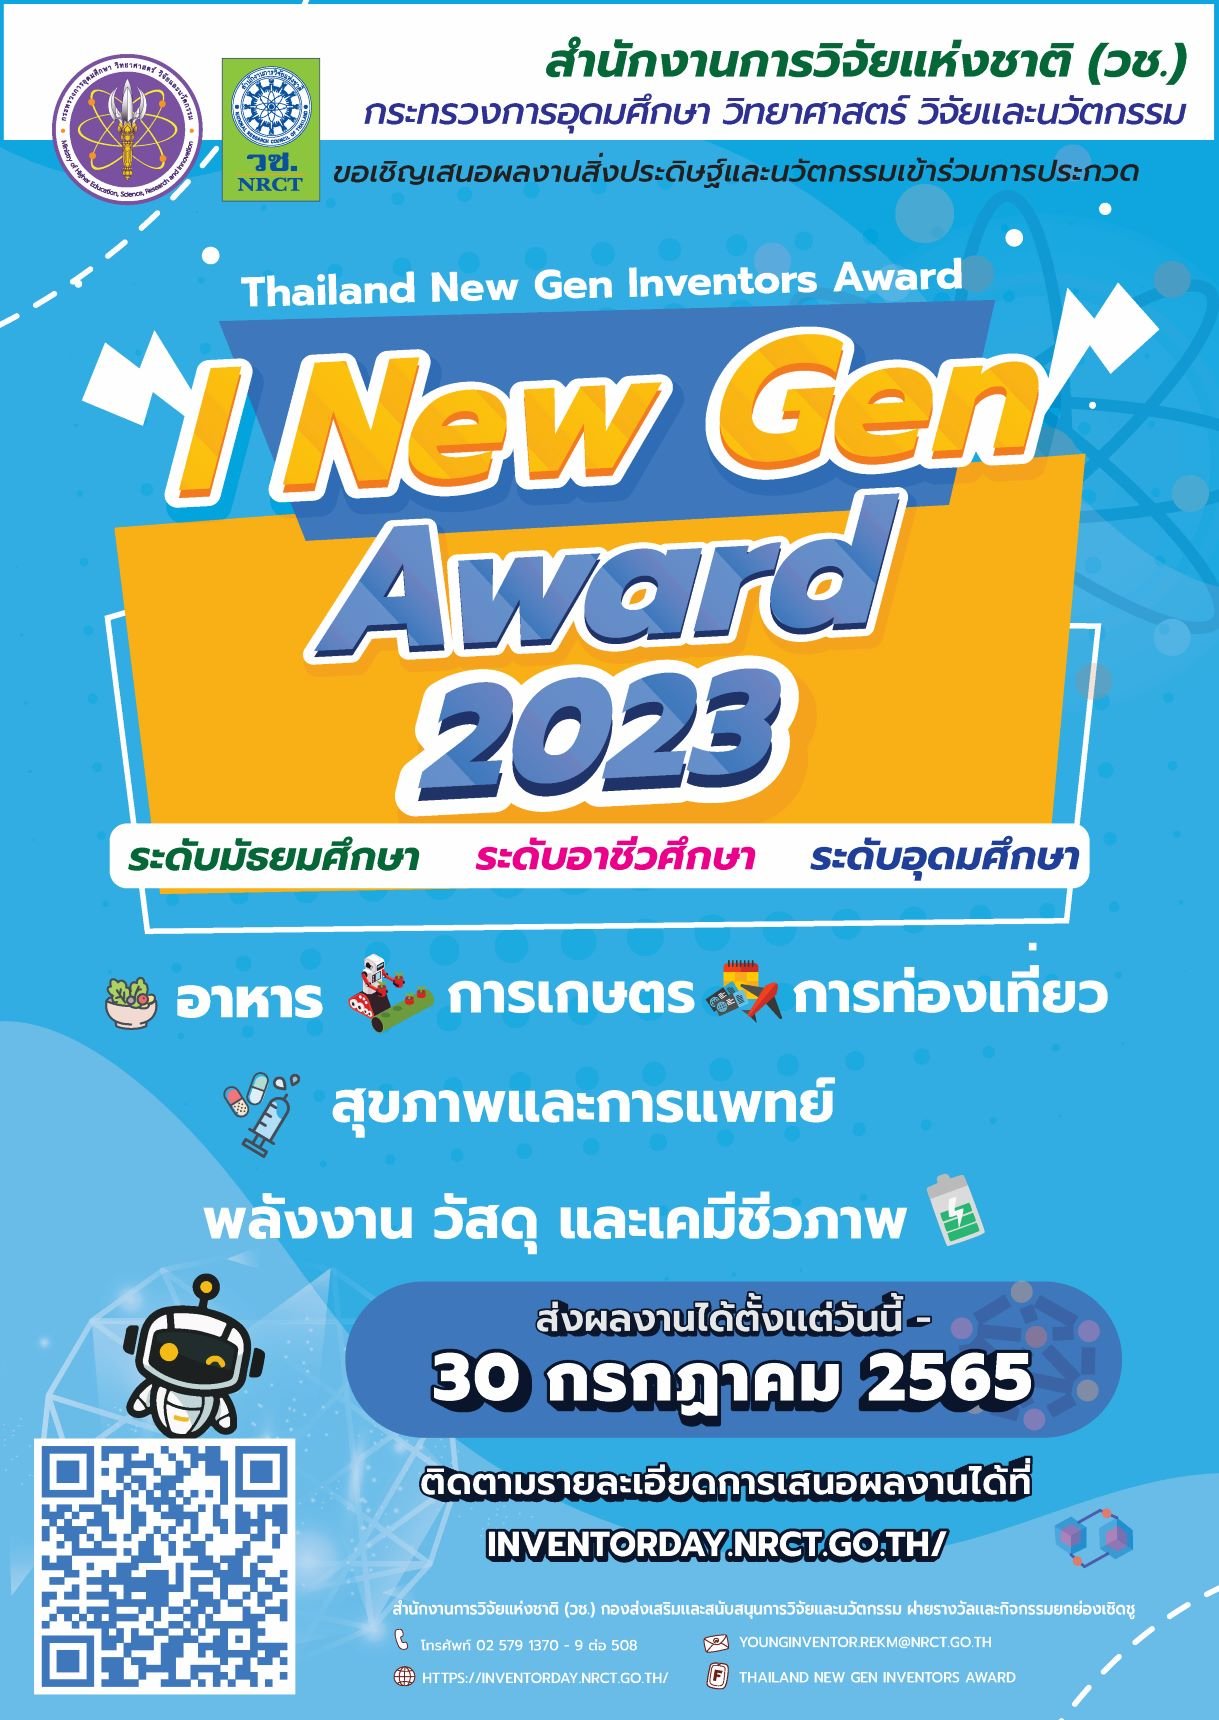 ประชาสัมพันธ์เชิญชวนนักเรียน นักศึกษา ในระดับมัธยมศึกษา อาชีวศึกษา และอุดมศึกษา เสนอผลงานสิ่งประดิษฐ์เข้าร่วมการประกวดสิ่งประดิษฐ์และนวัตกรรม “Thailand New Gen Inventors Award 2023”